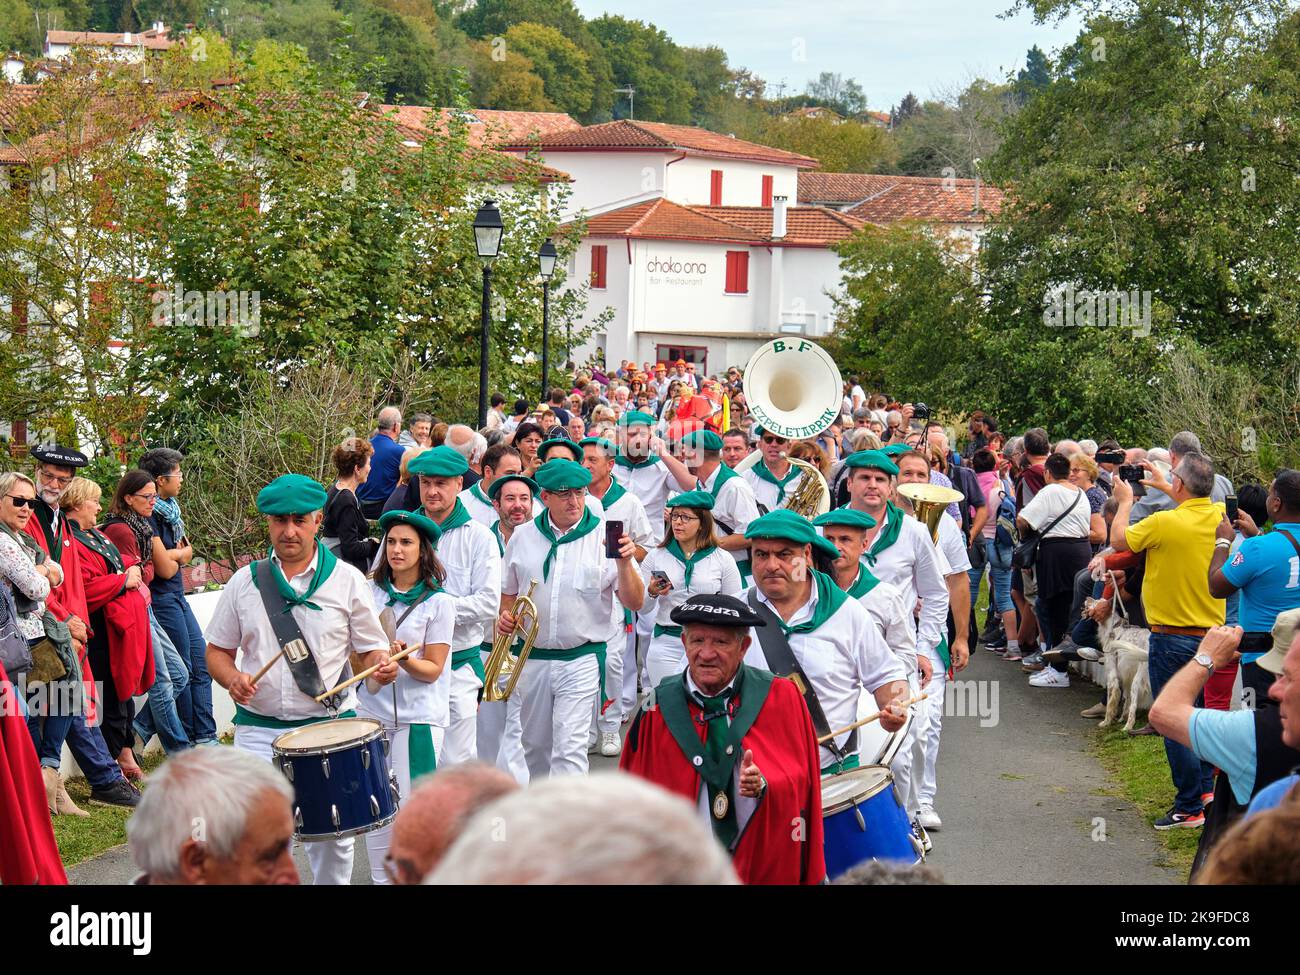 Feierliche sonntagsprozession beim Espelette-Pfefferfestival 2019 im Baskenland, Frankreich Stockfoto